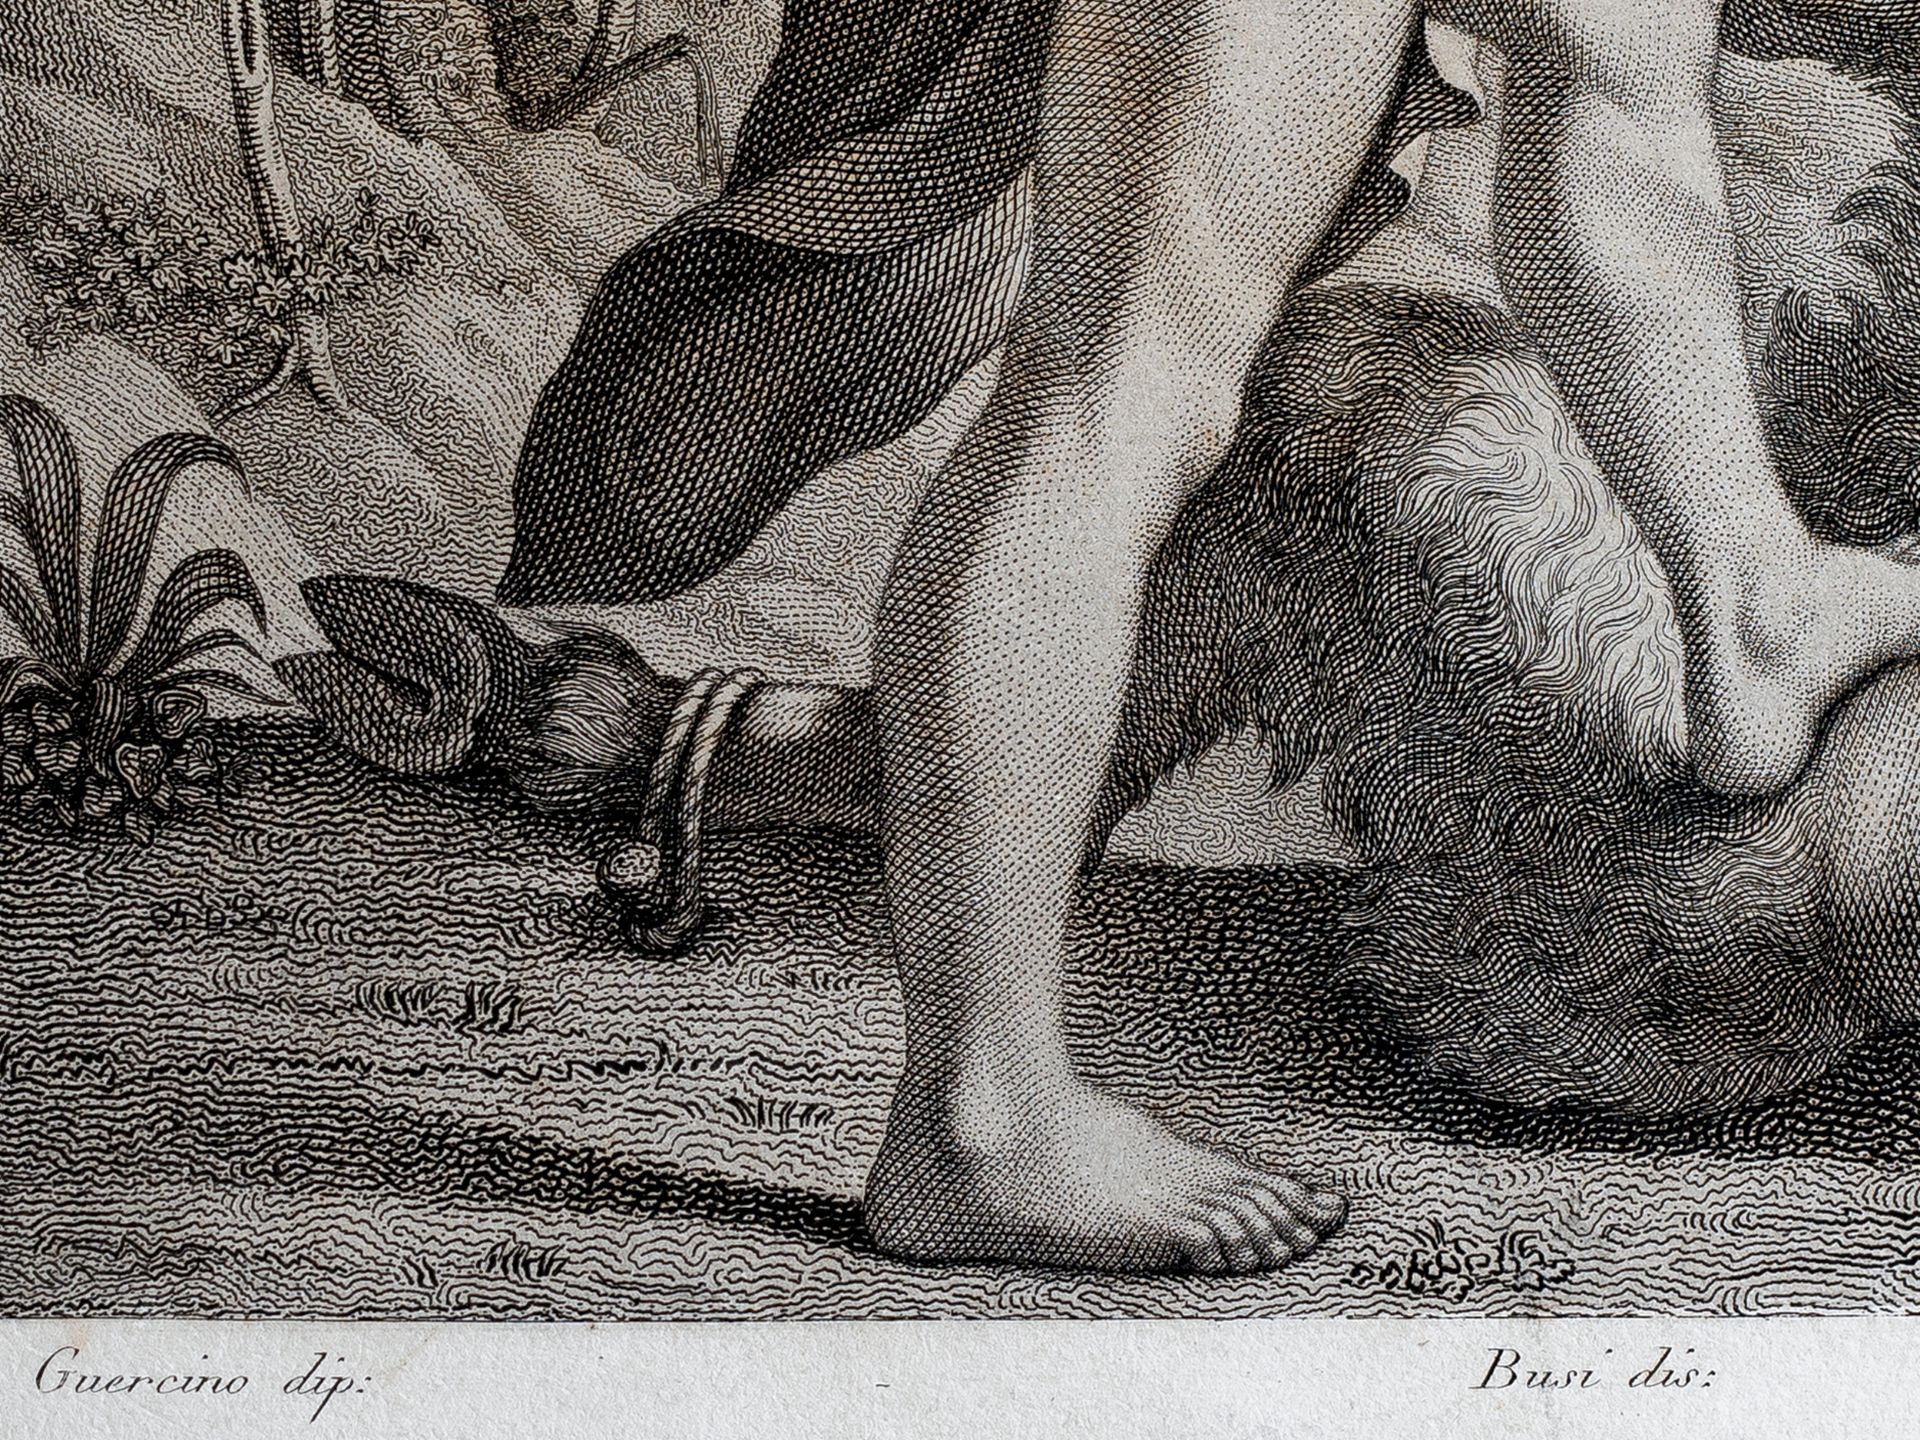 Luigi Martelli Faentino, Faenza 1804 – 1853, Nach Guercino - Bild 3 aus 3